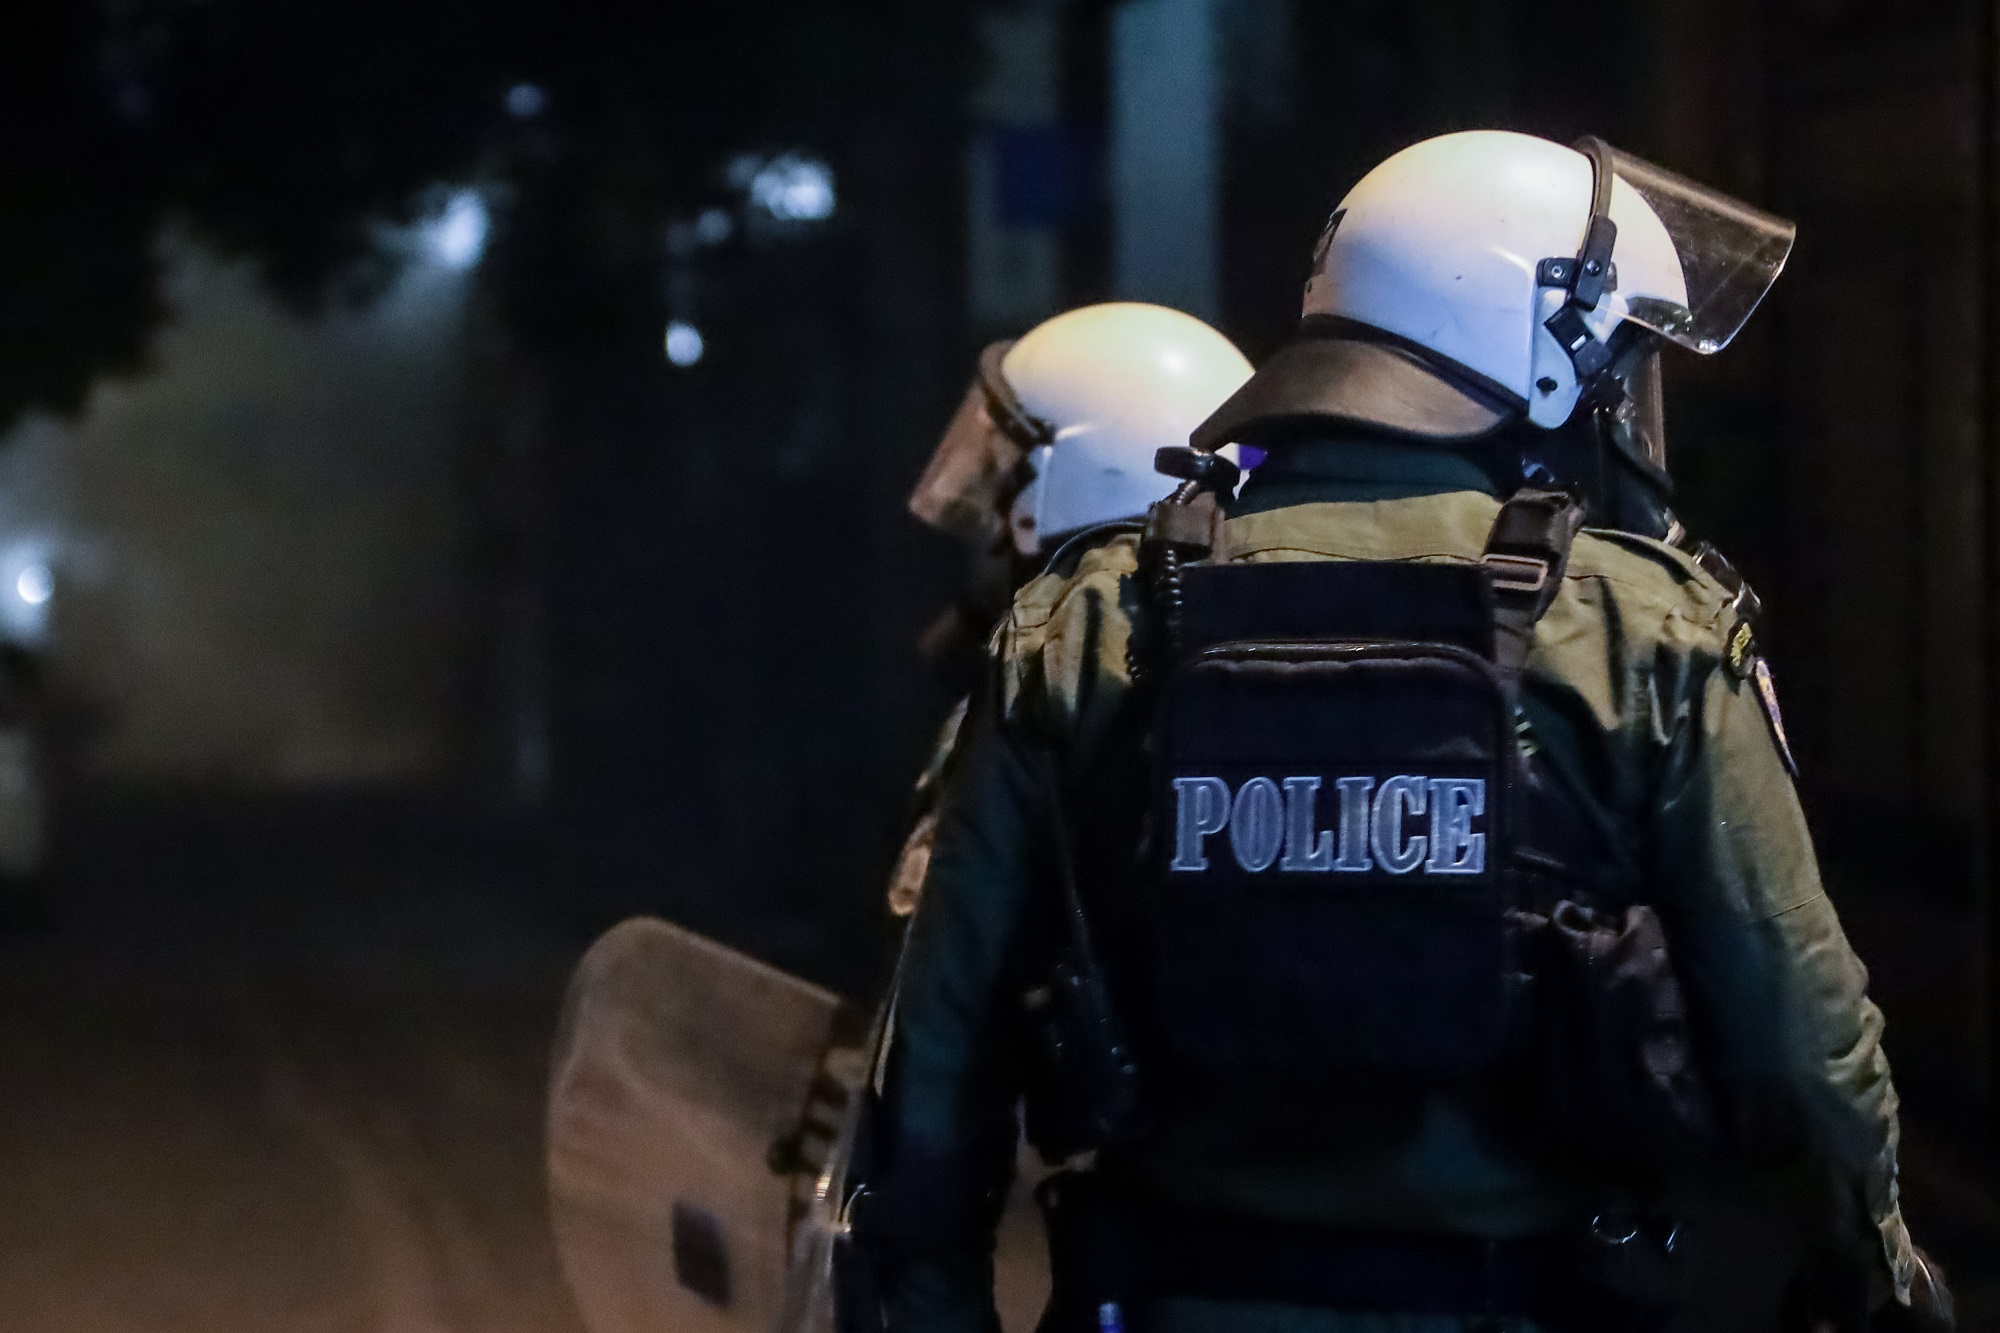 Πετράλωνα: Αστυνομικοί δέχθηκαν επίθεση με πέτρες – Μία σύλληψη